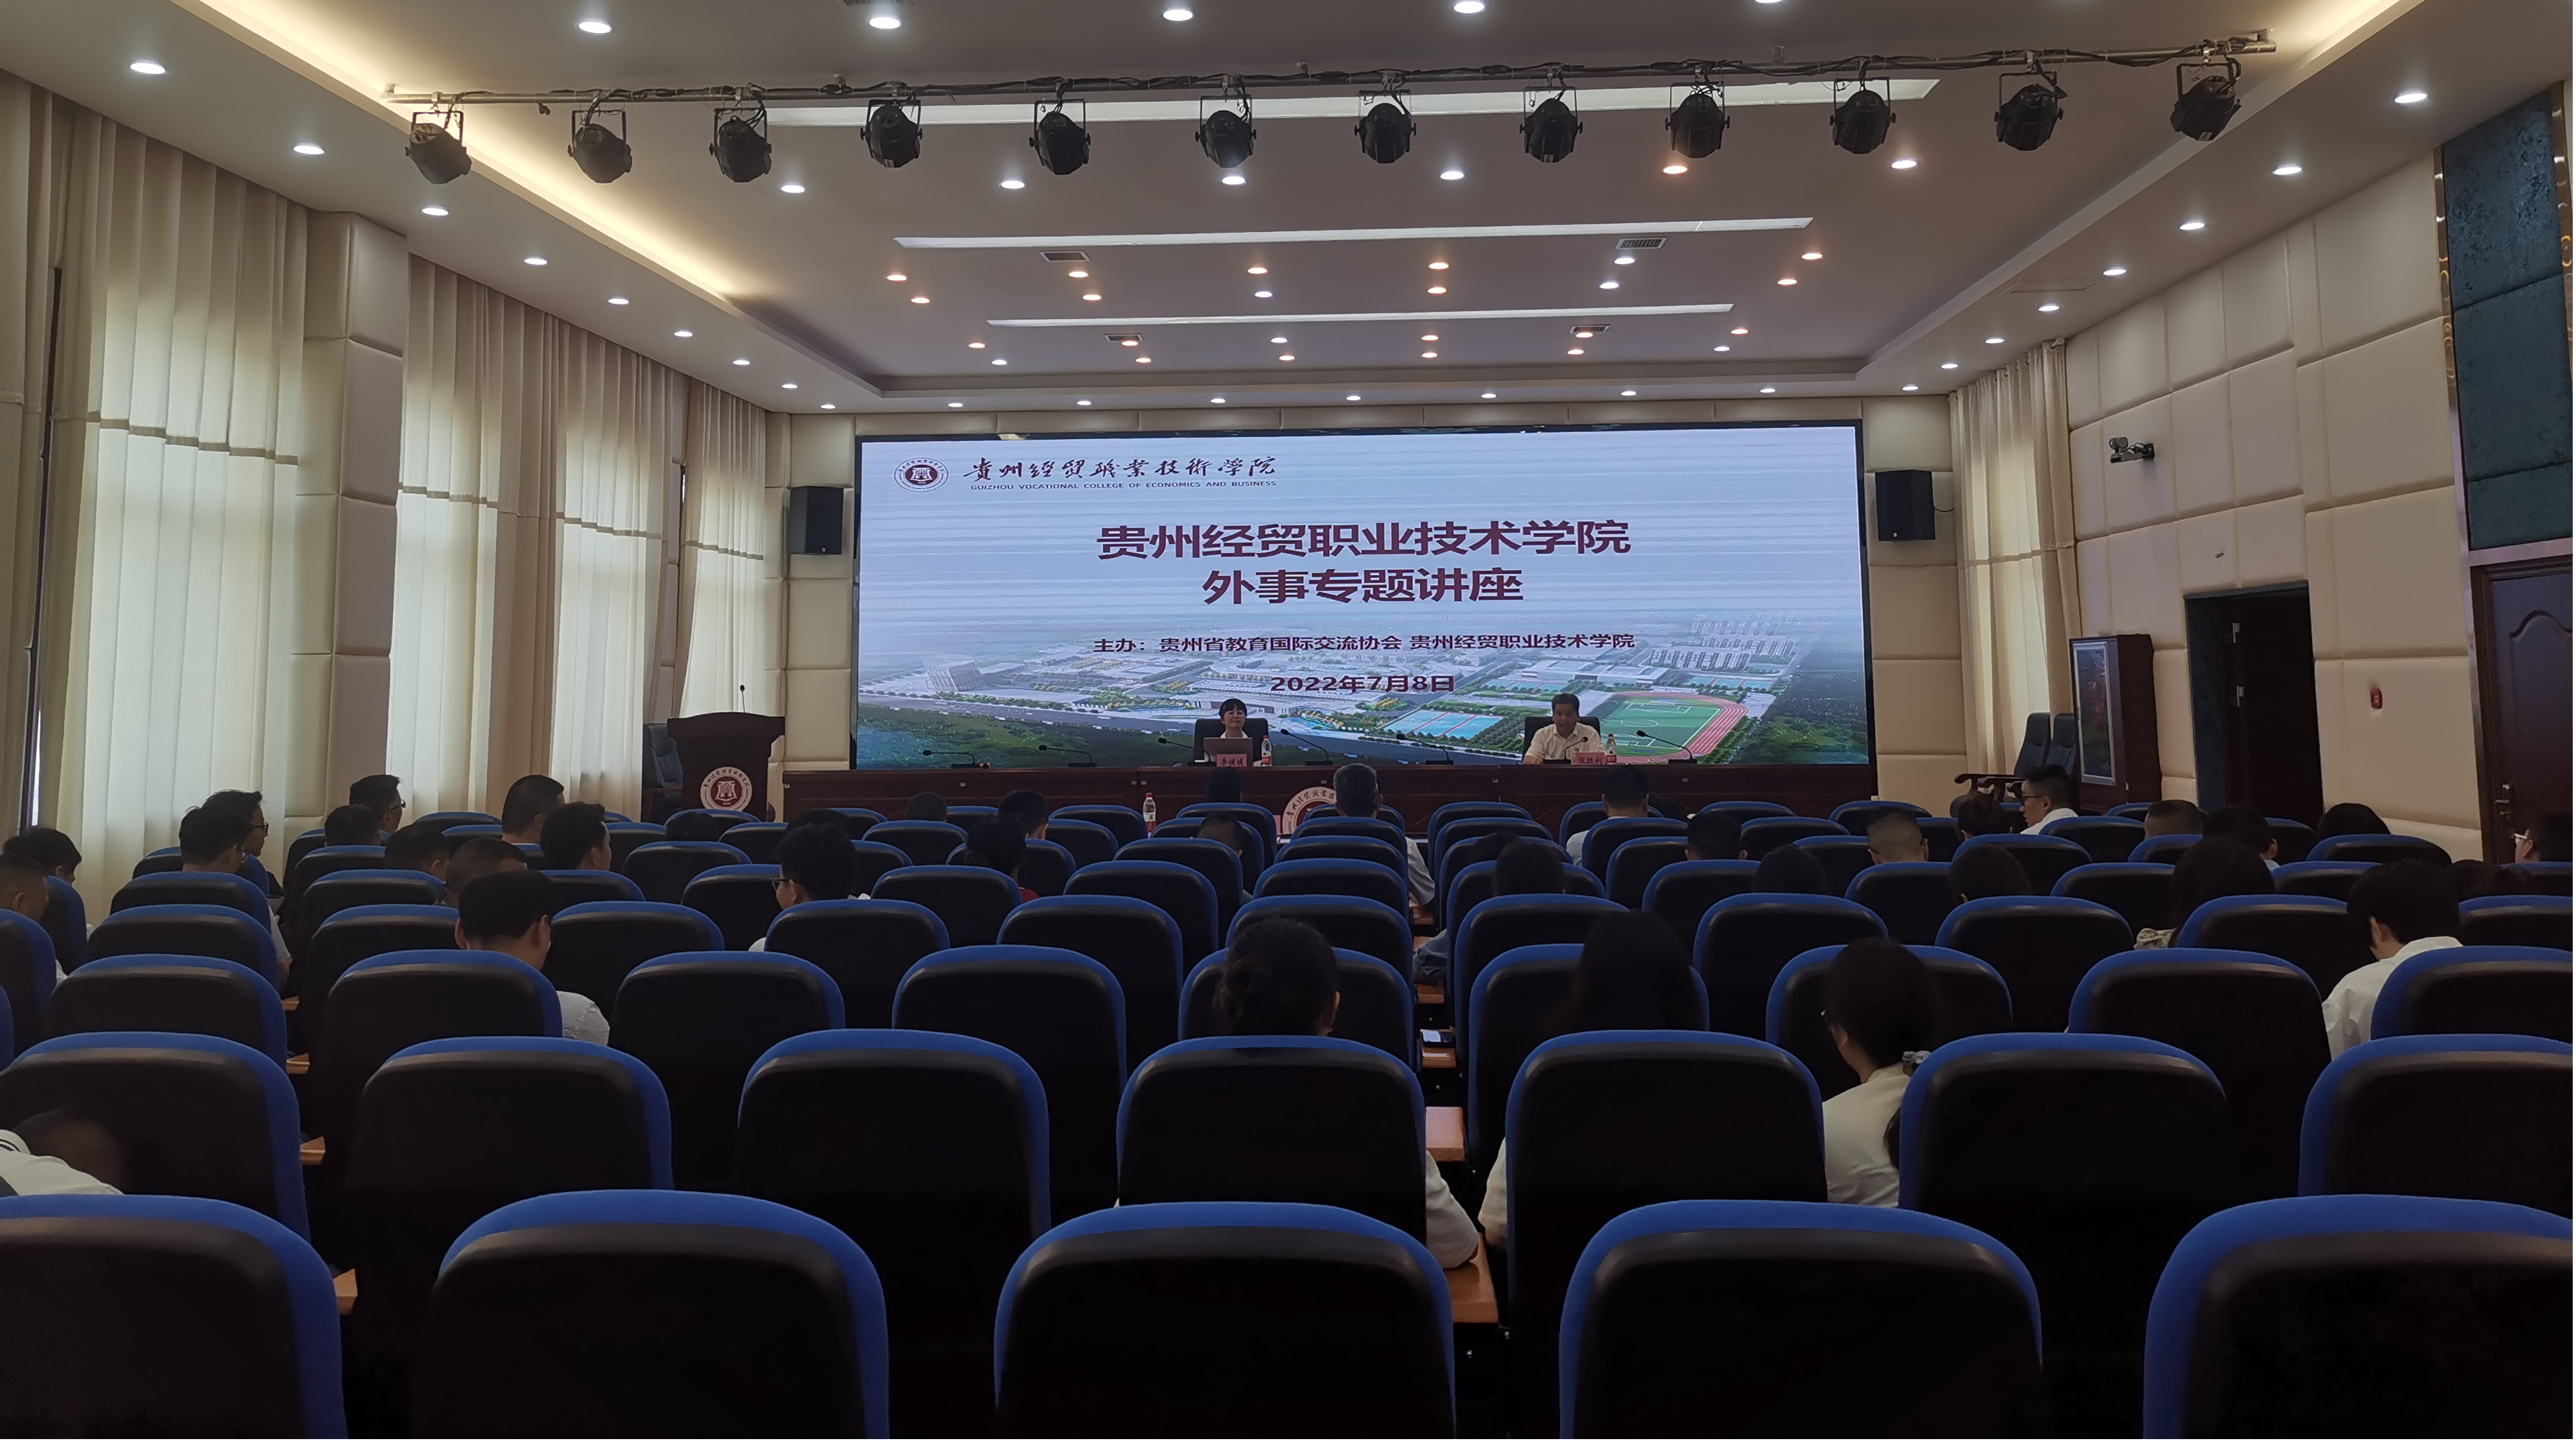 贵州经贸职业技术学院举办外事专题讲座(图文)